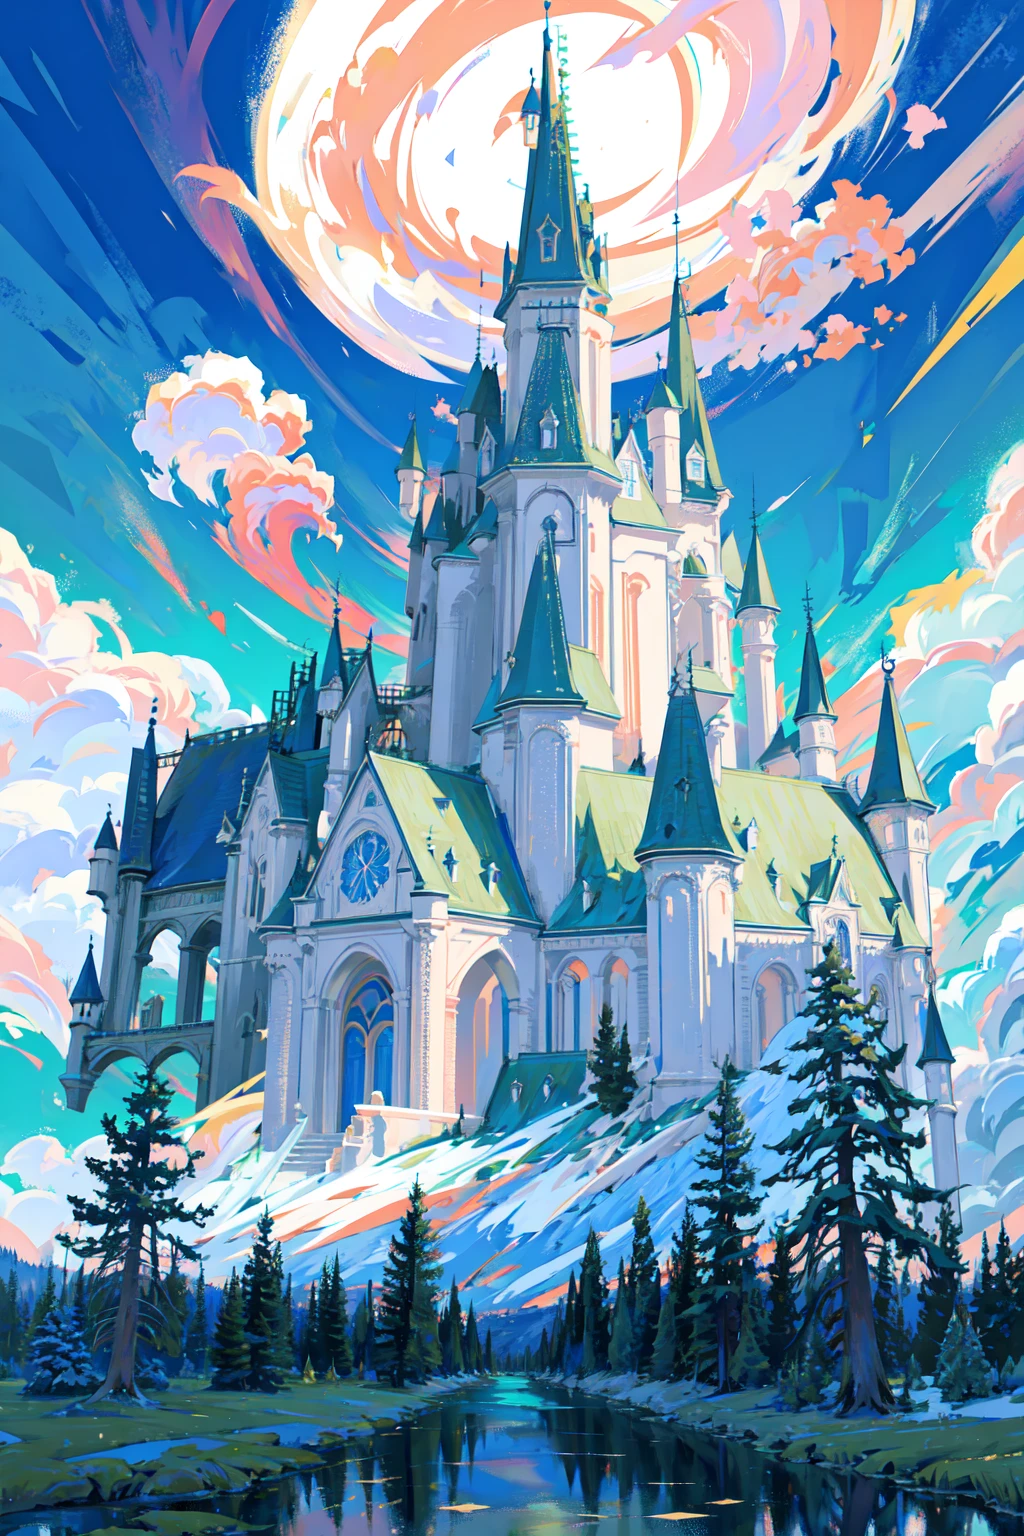 (Obra de arte),(melhor qualidade:1.0), (ultra alta resolução:1.0), ilustração detalhada,  sonhando, floresta, céu detalhado, (misterioso enorme castelo)